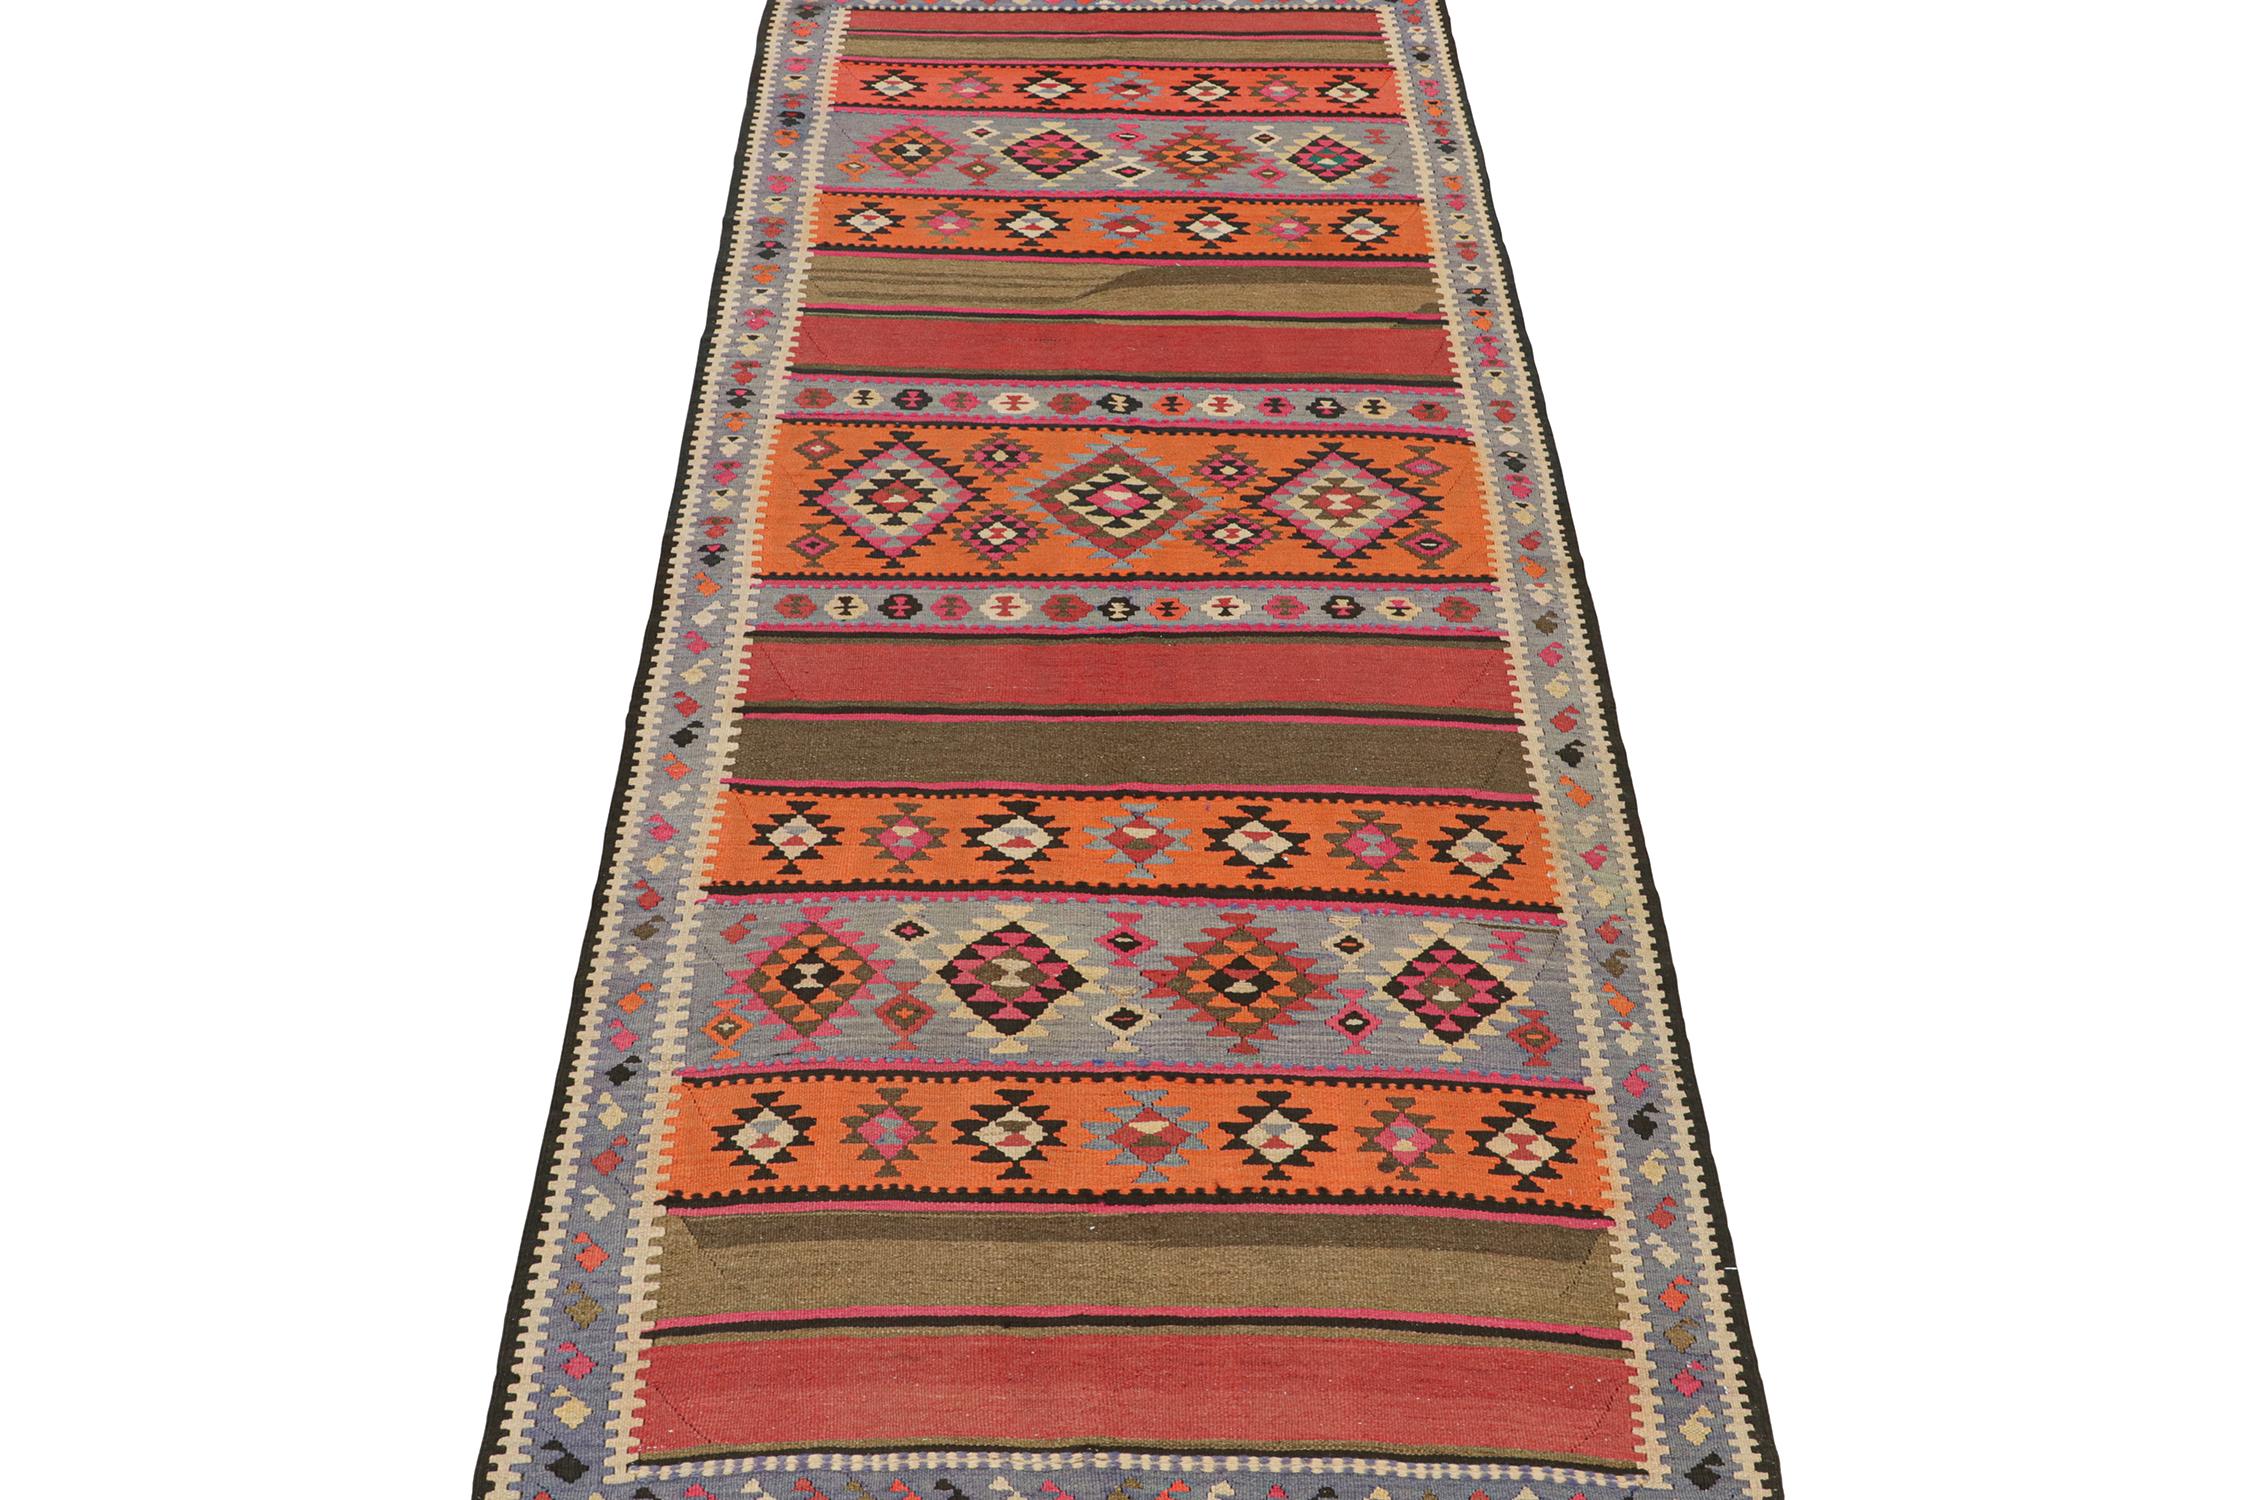 Dieser alte persische Kilim (5x13) ist ein Stammesteppich, von dem wir glauben, dass er aus Meschkin stammt - einem iranischen Dorf, das für sein Kunsthandwerk bekannt ist. Er ist aus Wolle handgewebt und stammt aus der Zeit um 1950-1960.

Das